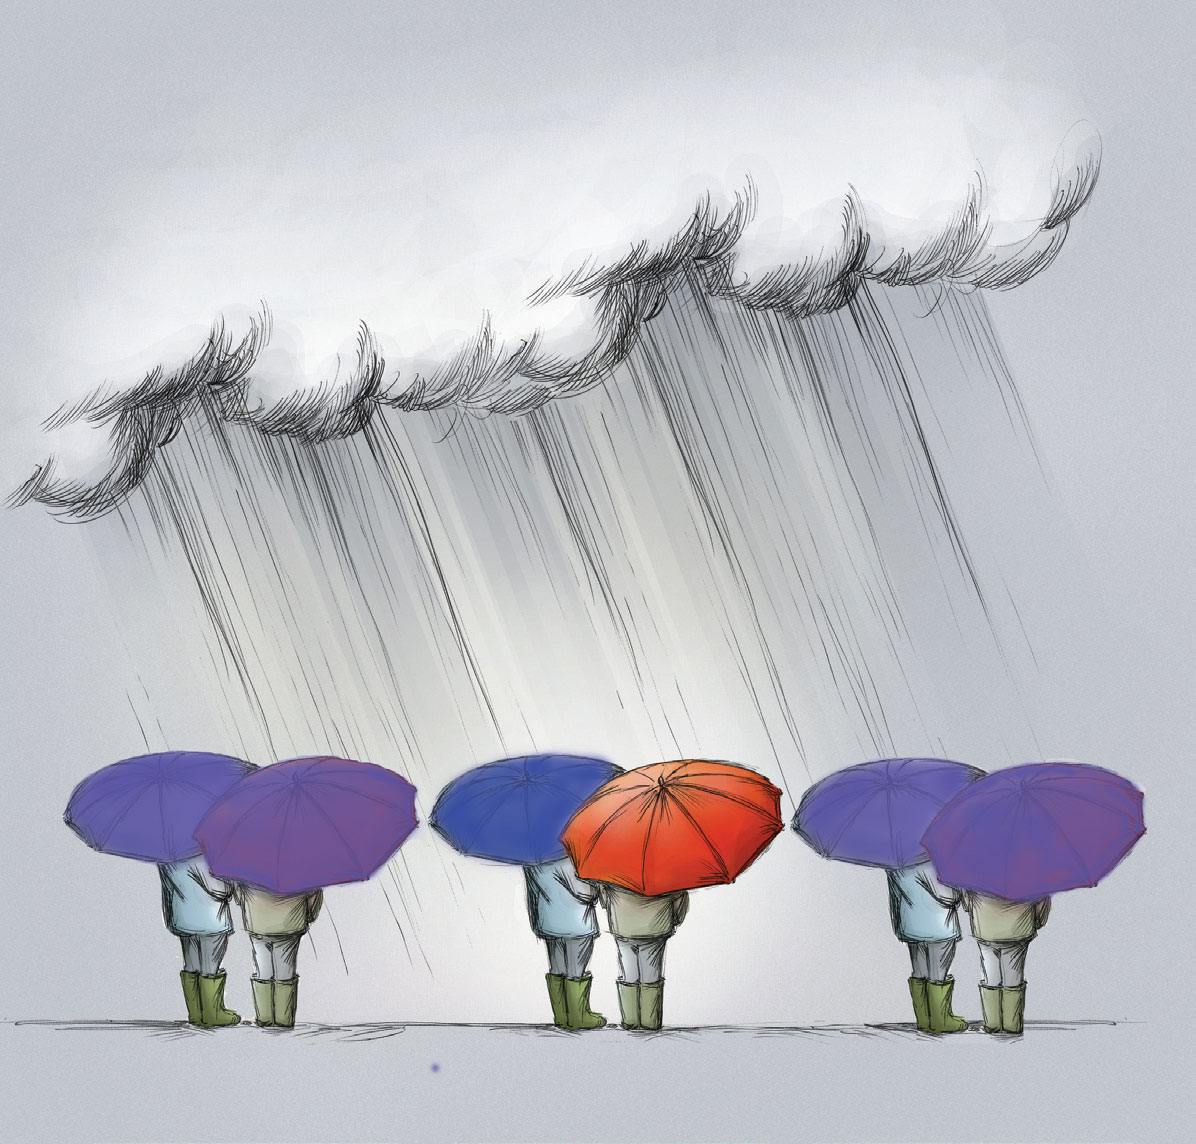 four people under umbrellas in the rain